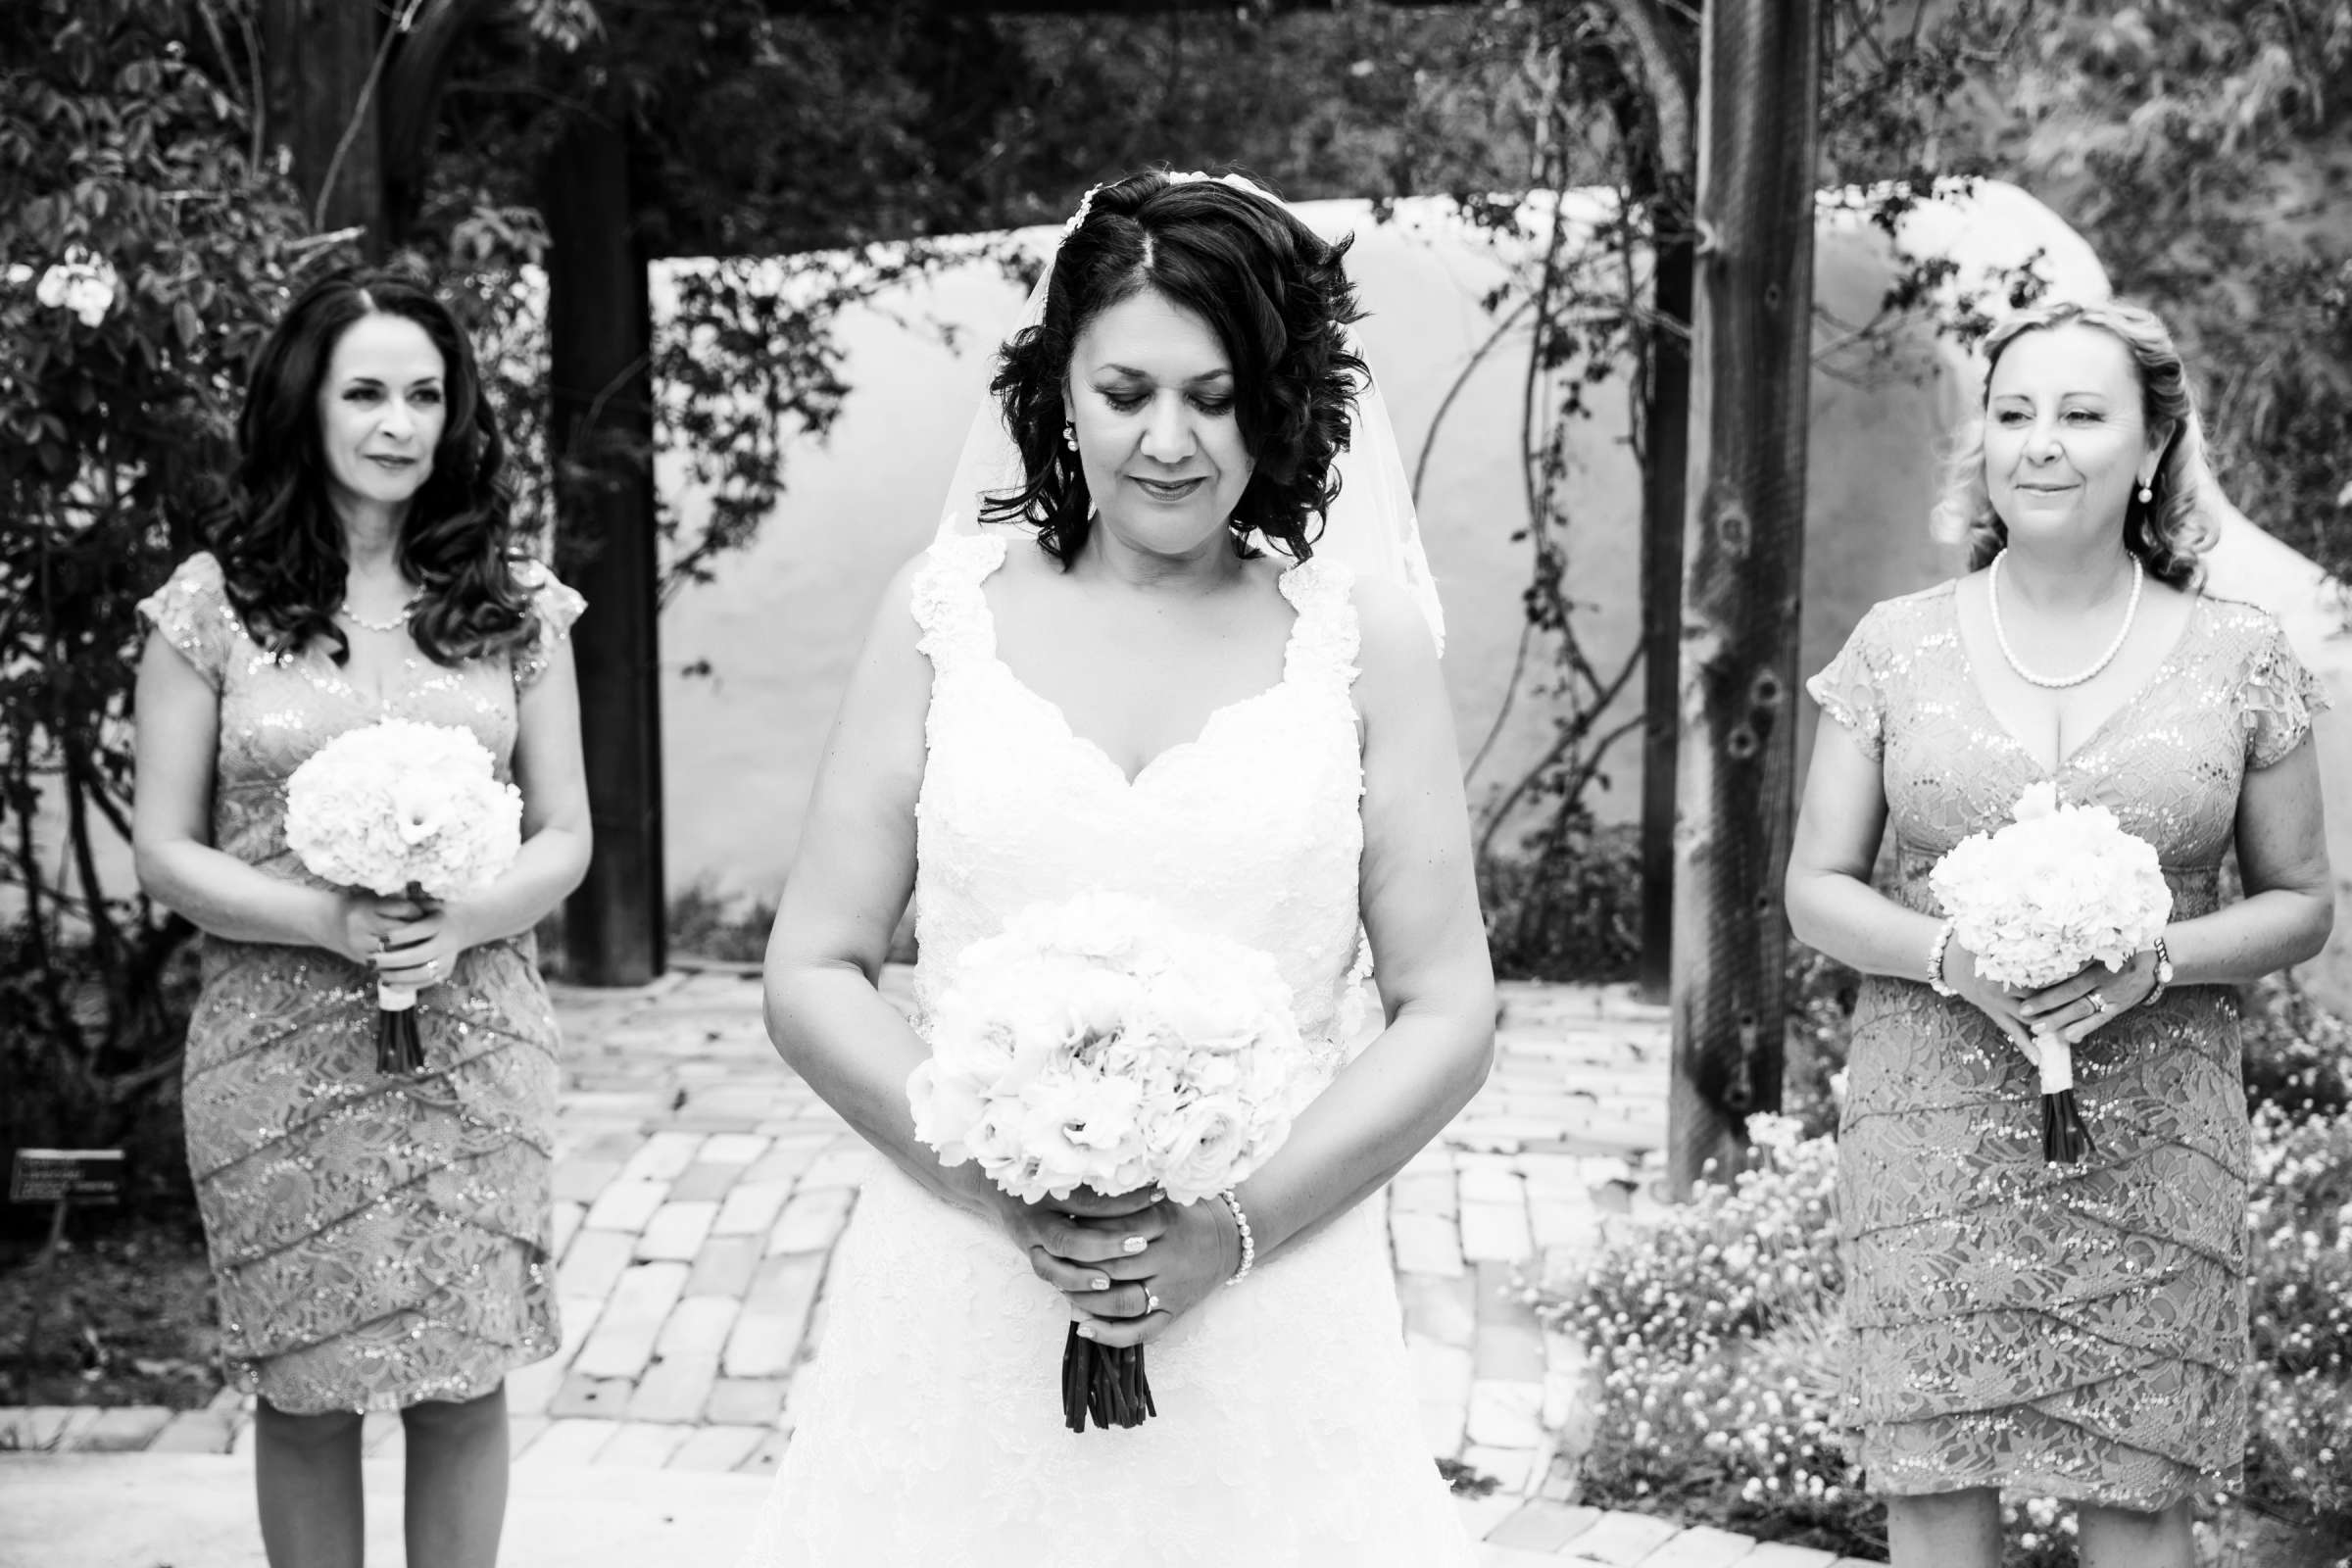 Rancho Buena Vista Adobe Wedding, Ellinor and Frank Wedding Photo #10 by True Photography